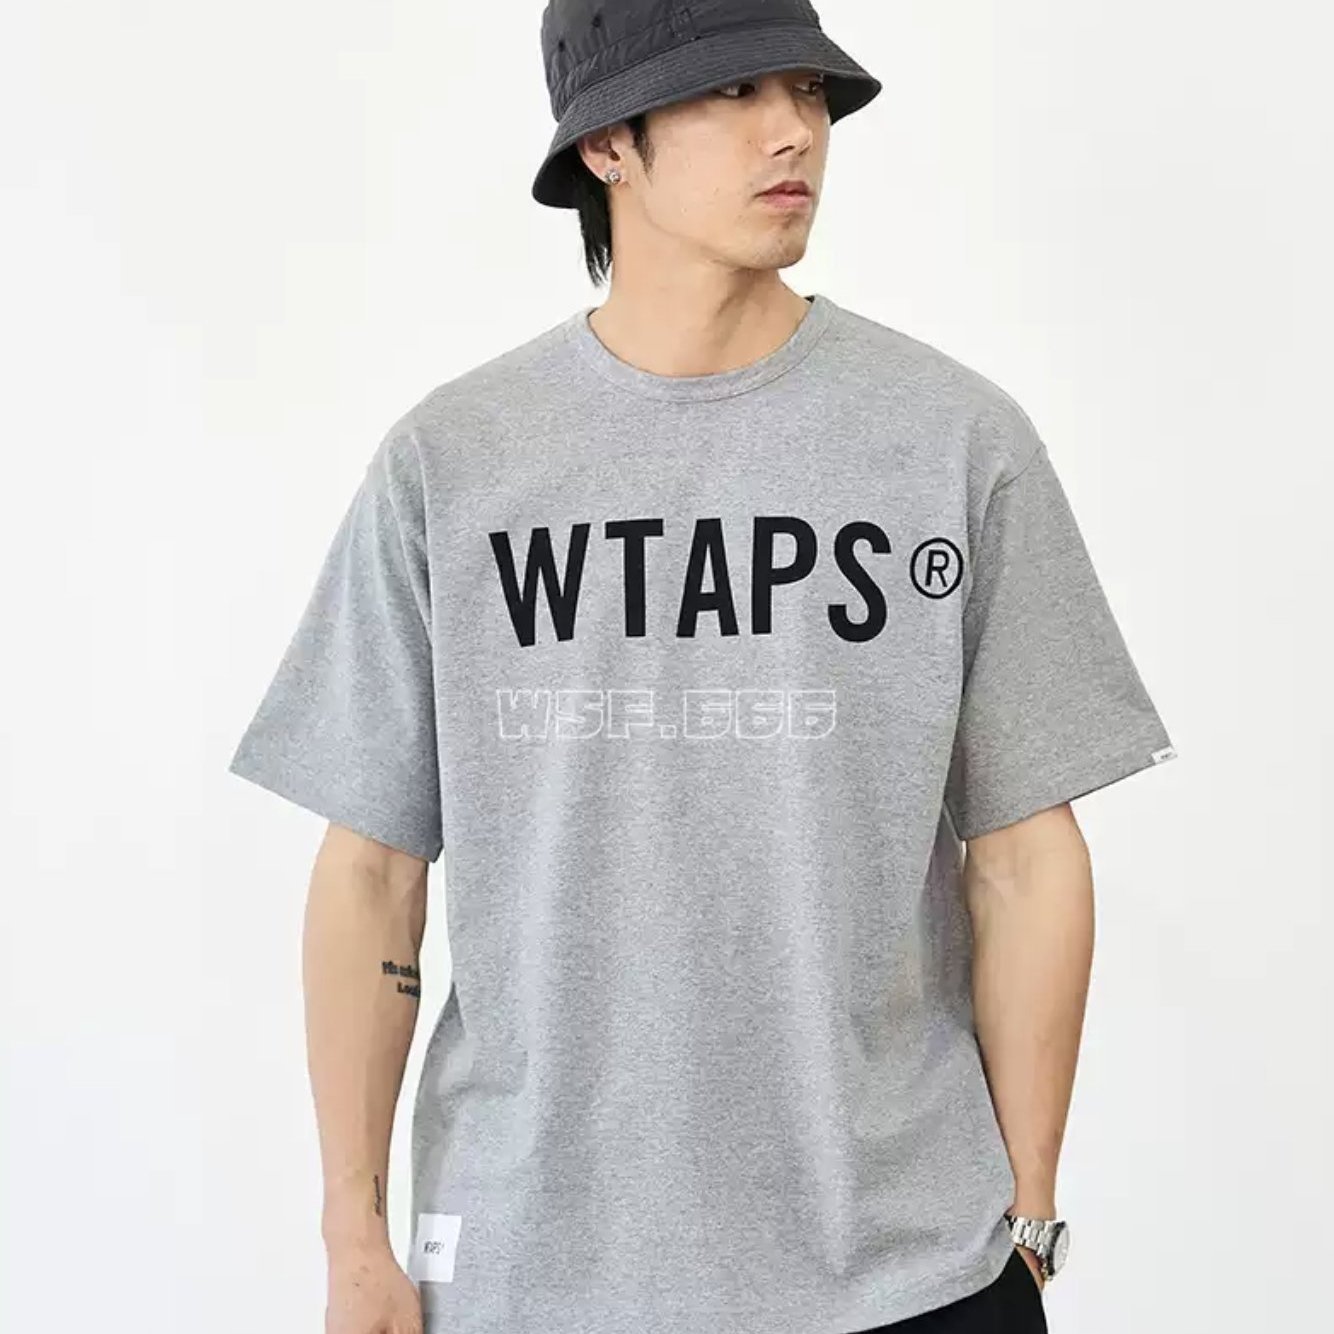 Tシャツ/カットソー(半袖/袖なし)WTAPS BANNER SS COTTON ホワイト M 新品 21SS 白